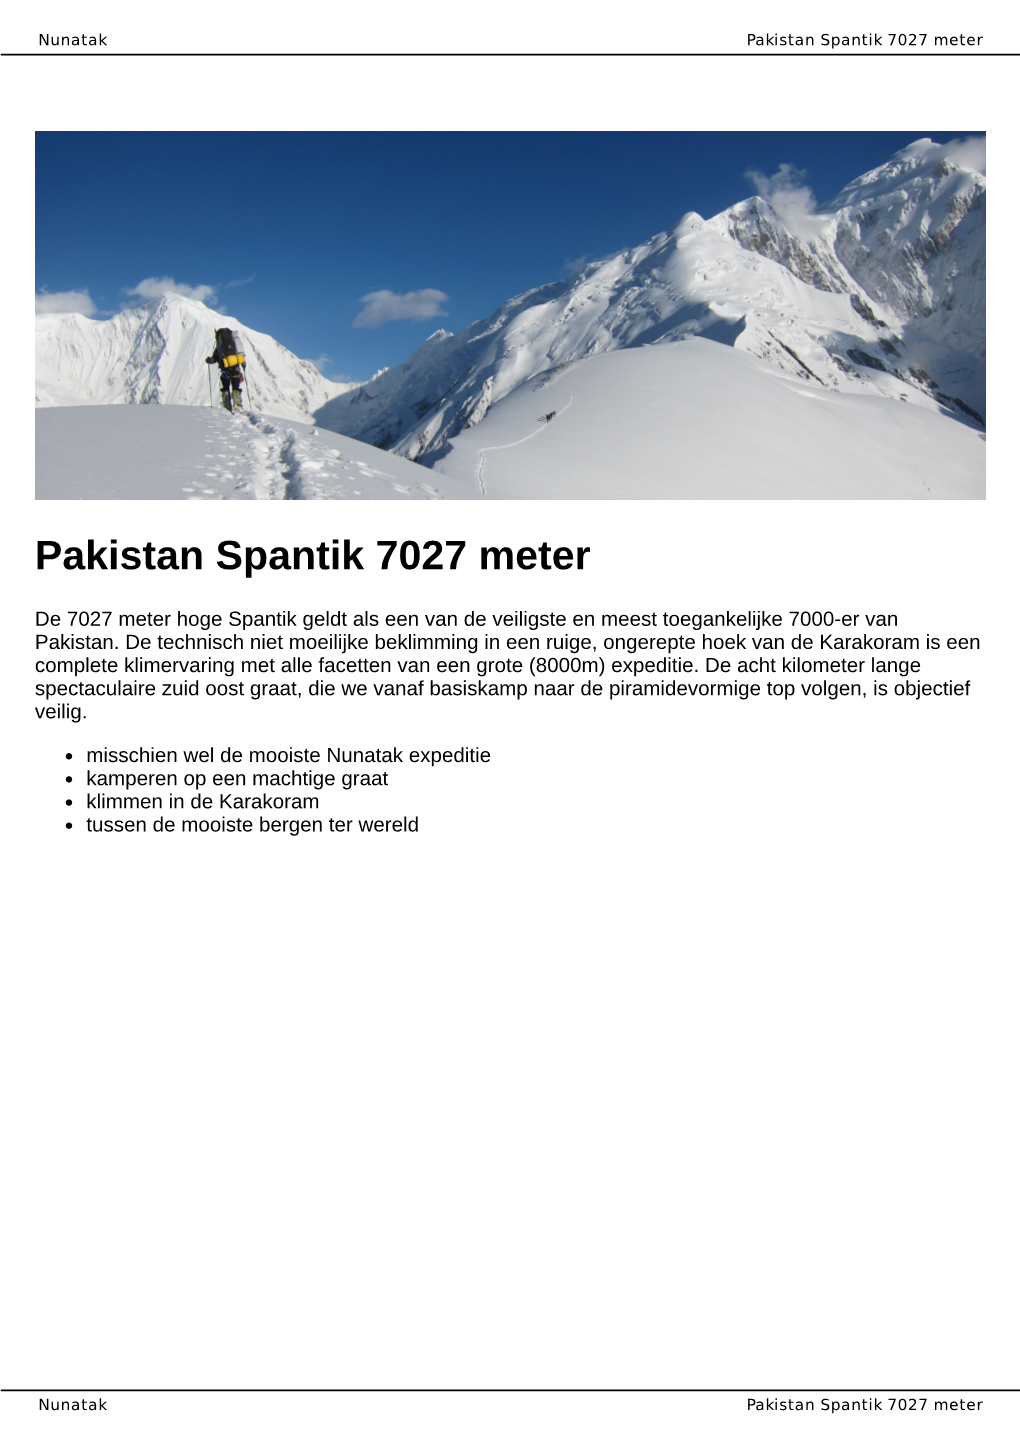 Pakistan Spantik 7027 Meter